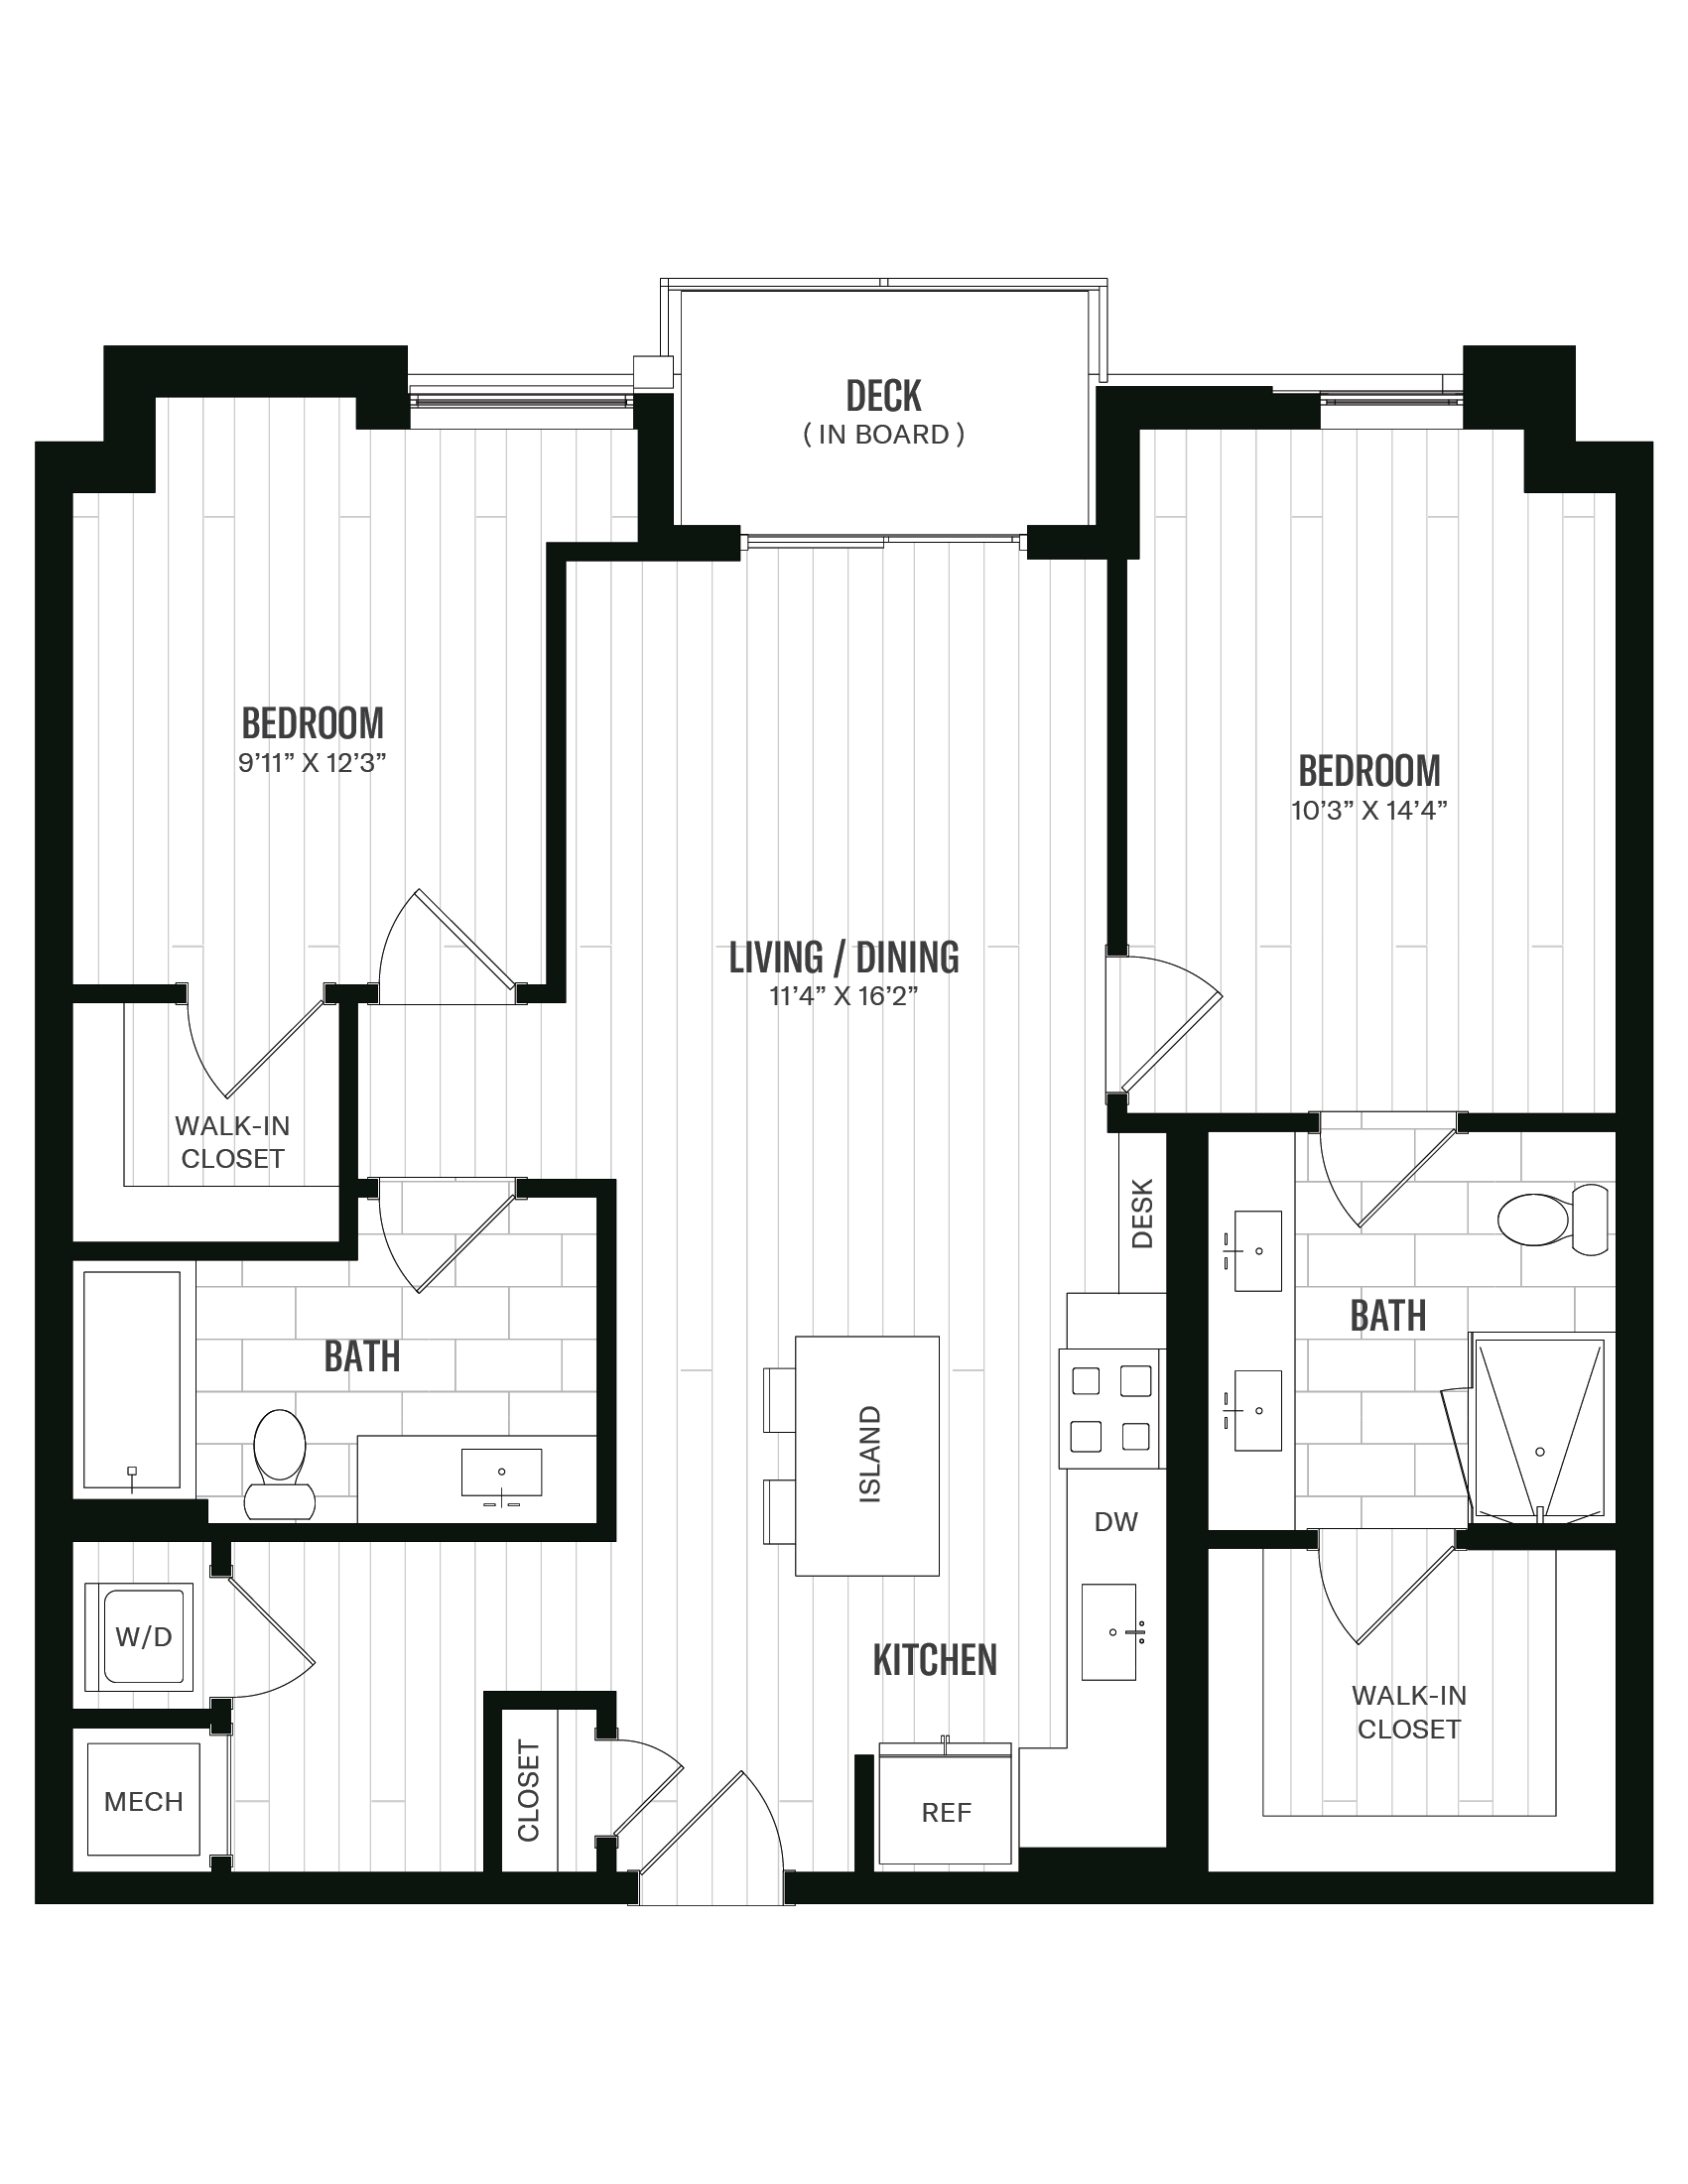 Floorplan image of unit 359